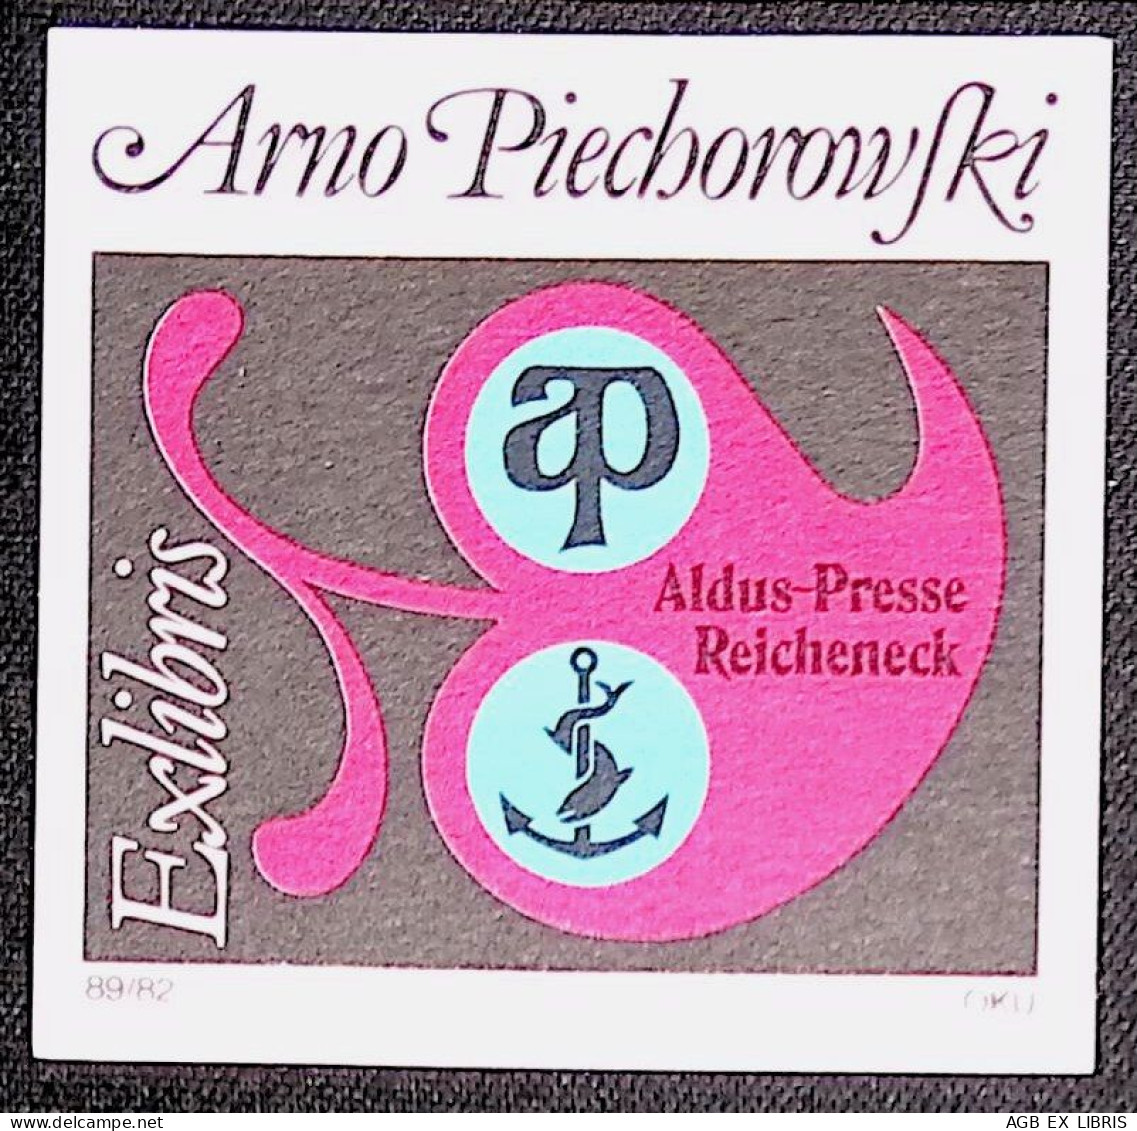 EX LIBRIS OTTO KUCHENBAUER Per ARNO PIECHOROWSKI 89/82 L27bis-F01 ALDUS-PRESSE REICHENECK - Exlibris